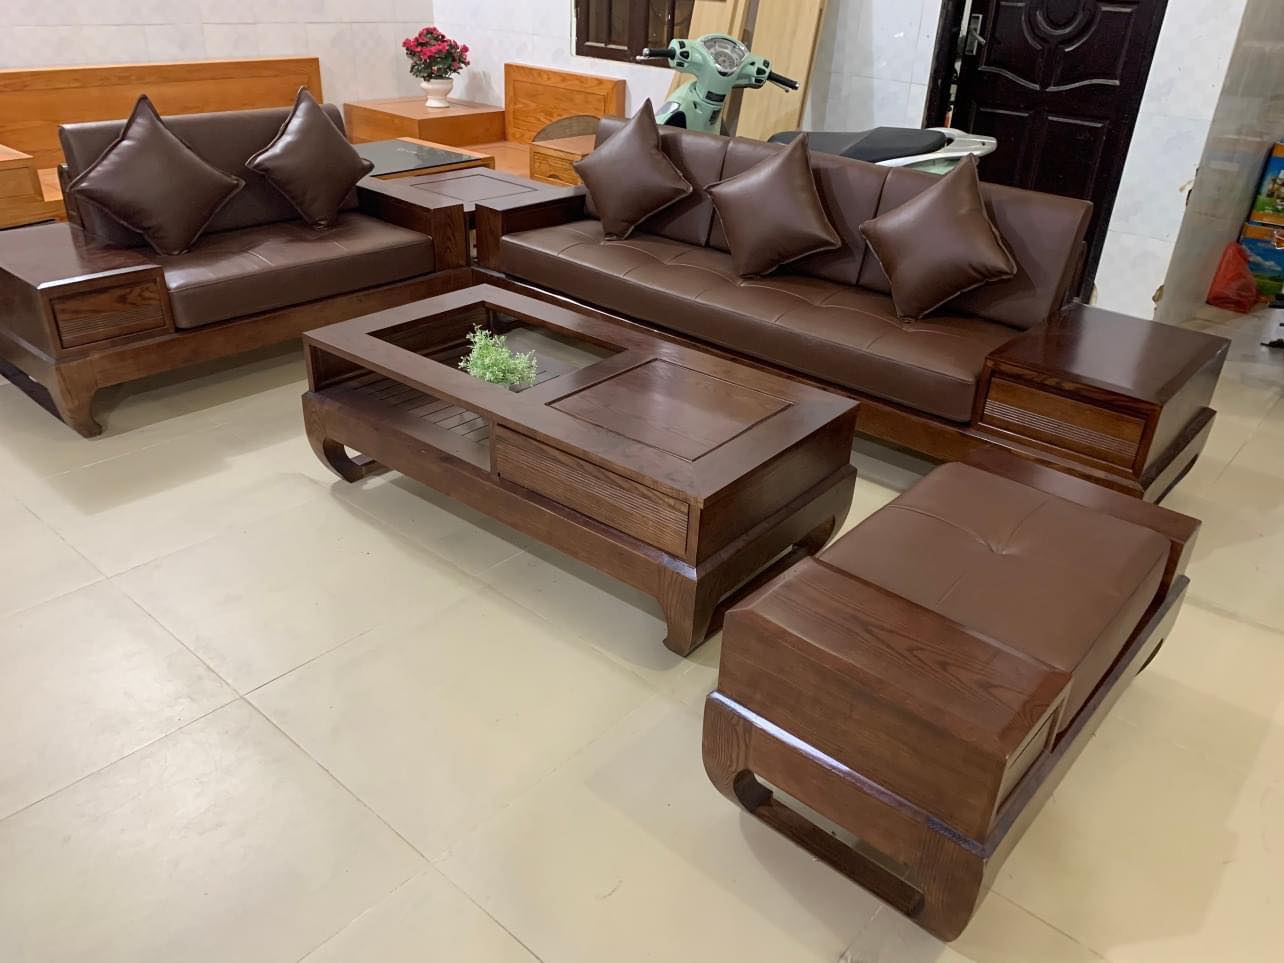 Bàn ghế sofa gỗ sồi Ninh Bình: Là sản phẩm được làm từ gỗ sồi Ninh Bình chất lượng cao, bàn ghế sofa gỗ sồi Ninh Bình là một lựa chọn tuyệt vời cho không gian phòng khách của bạn. Với thiết kế đơn giản và tinh tế, bàn ghế này sẽ giúp bạn dễ dàng phối hợp và bố trí không gian sống của mình. Bạn sẽ cảm thấy hài lòng về chất lượng của sản phẩm này và sự thoải mái khi sử dụng.